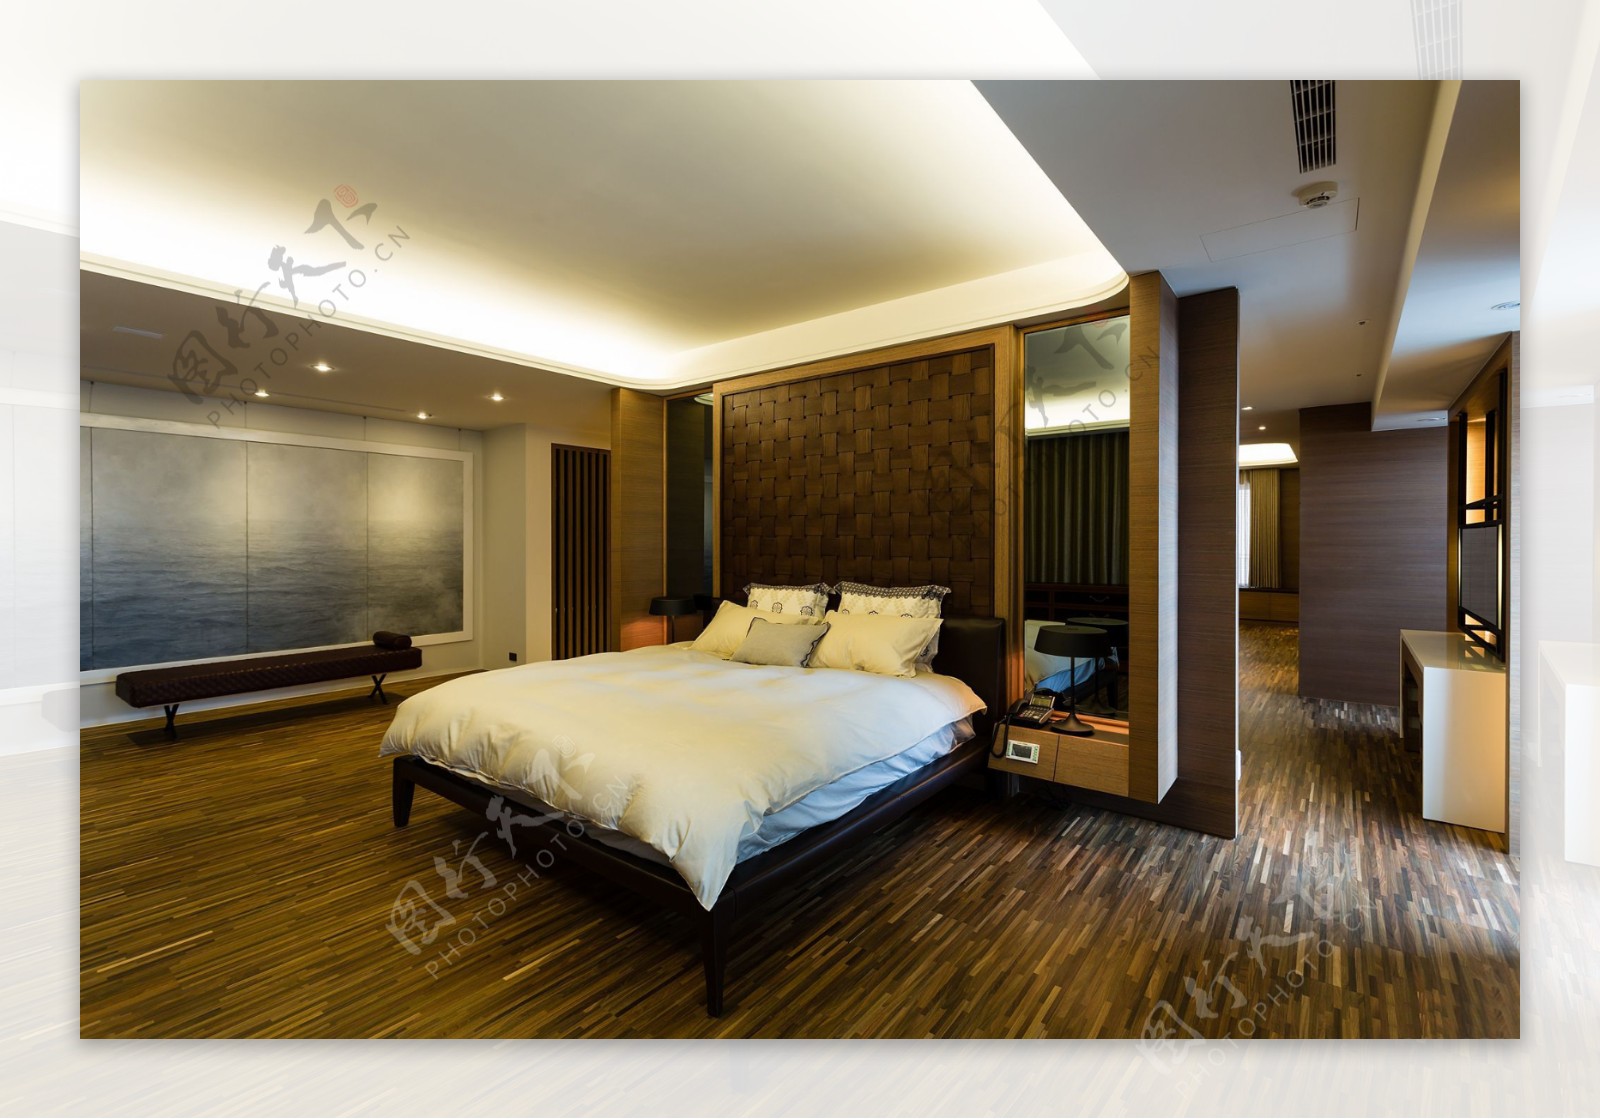 中式经典时尚卧室木地板室内装修效果图